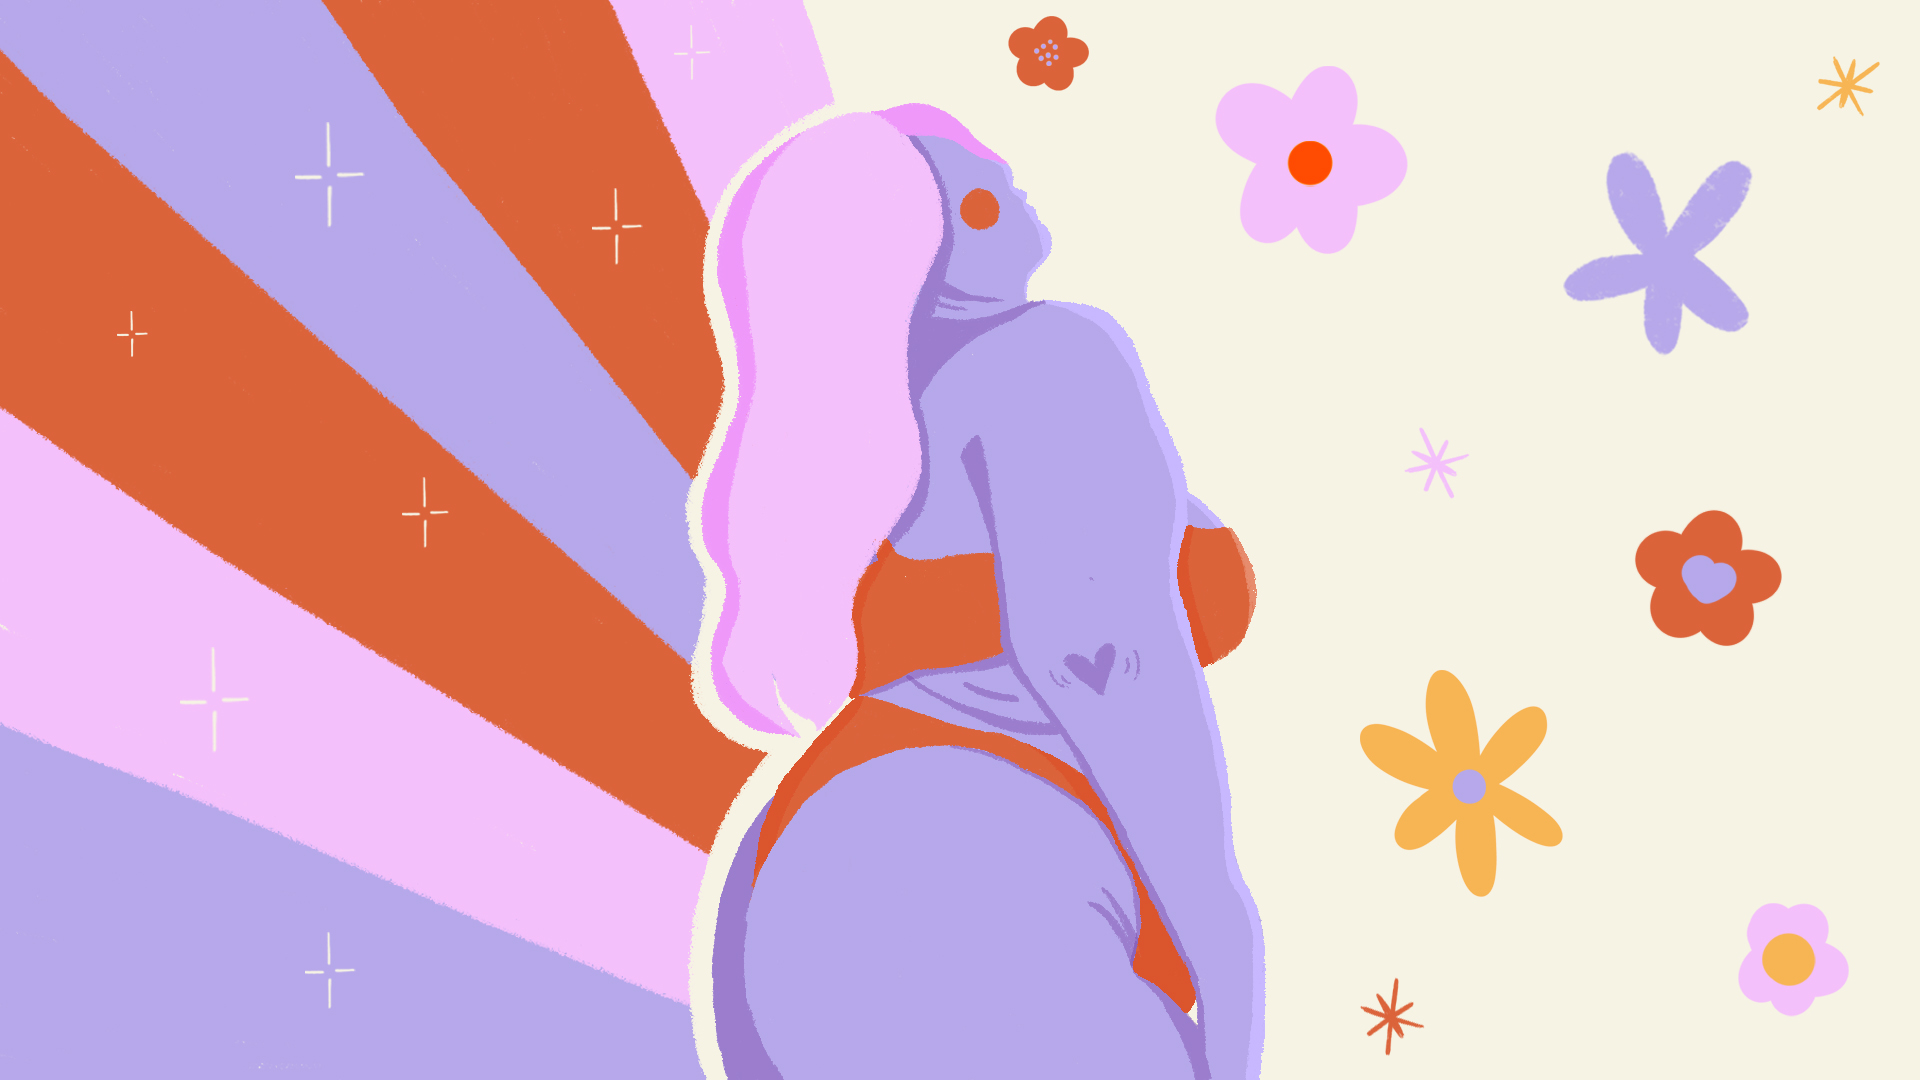 Ilustração da lateral do corpo de uma garota gorda. À direita dela, há uma estampa de florzinhas no fundo e, à esquerda, listras em laranja, rosa e lilás. O cabelo dela é rosa e ela está de biquíni laranja e seu corpo é lilás.